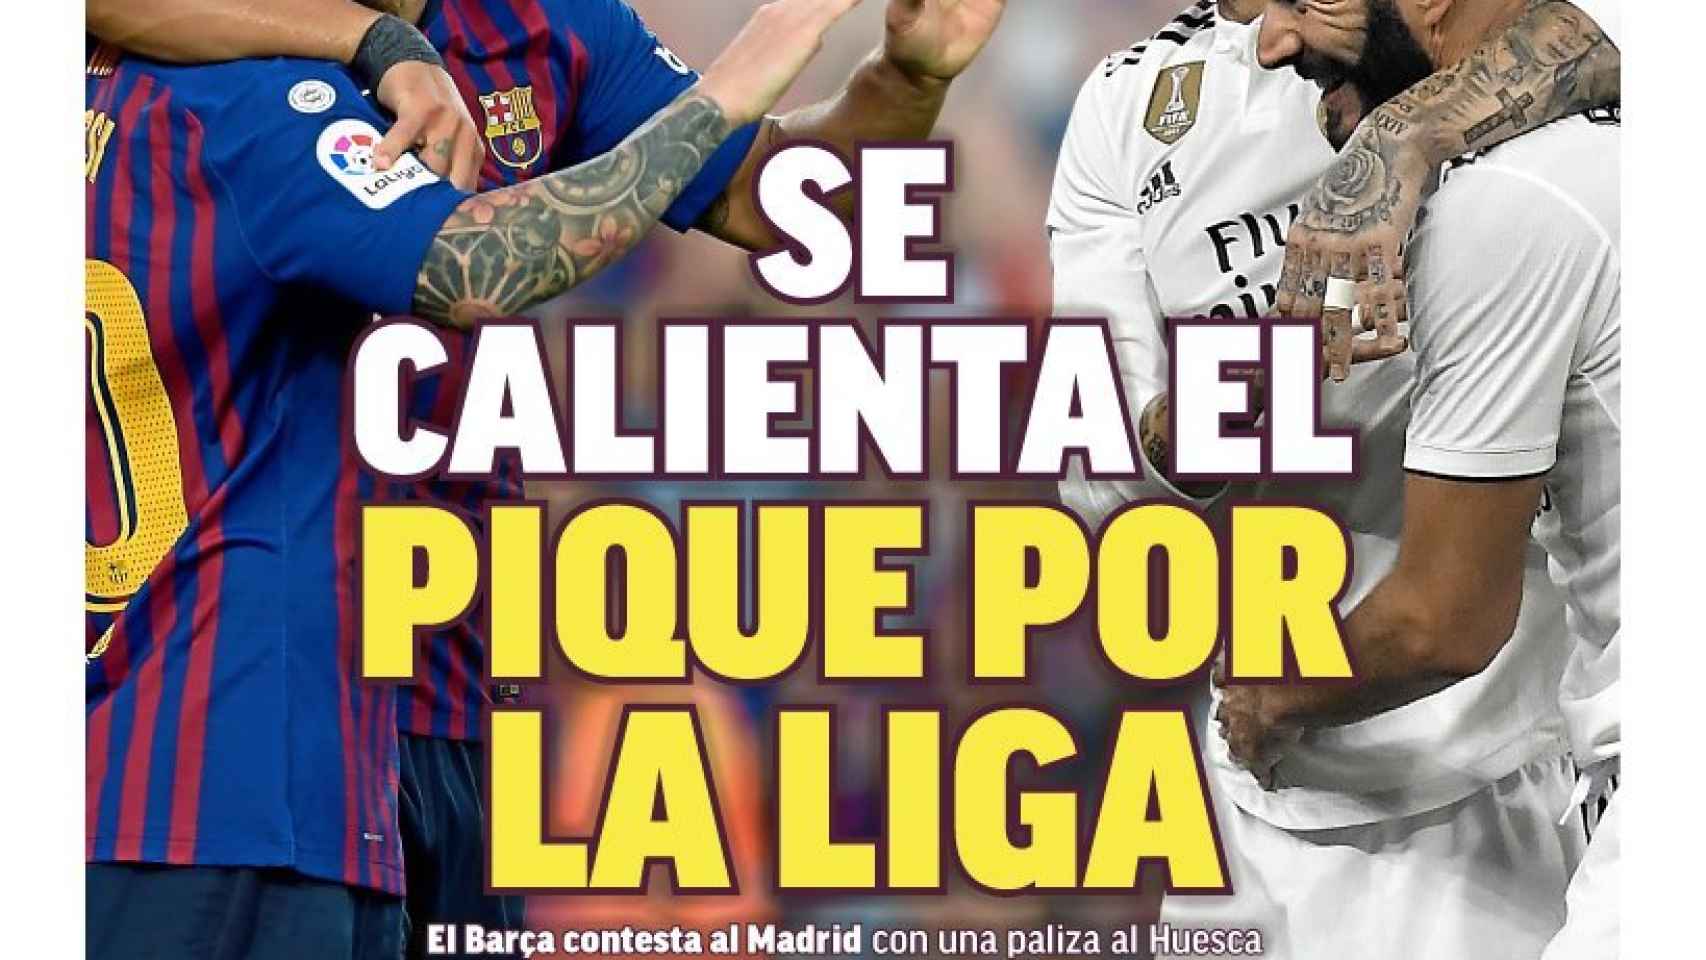 La portada del diario Marca (03/09/2018)